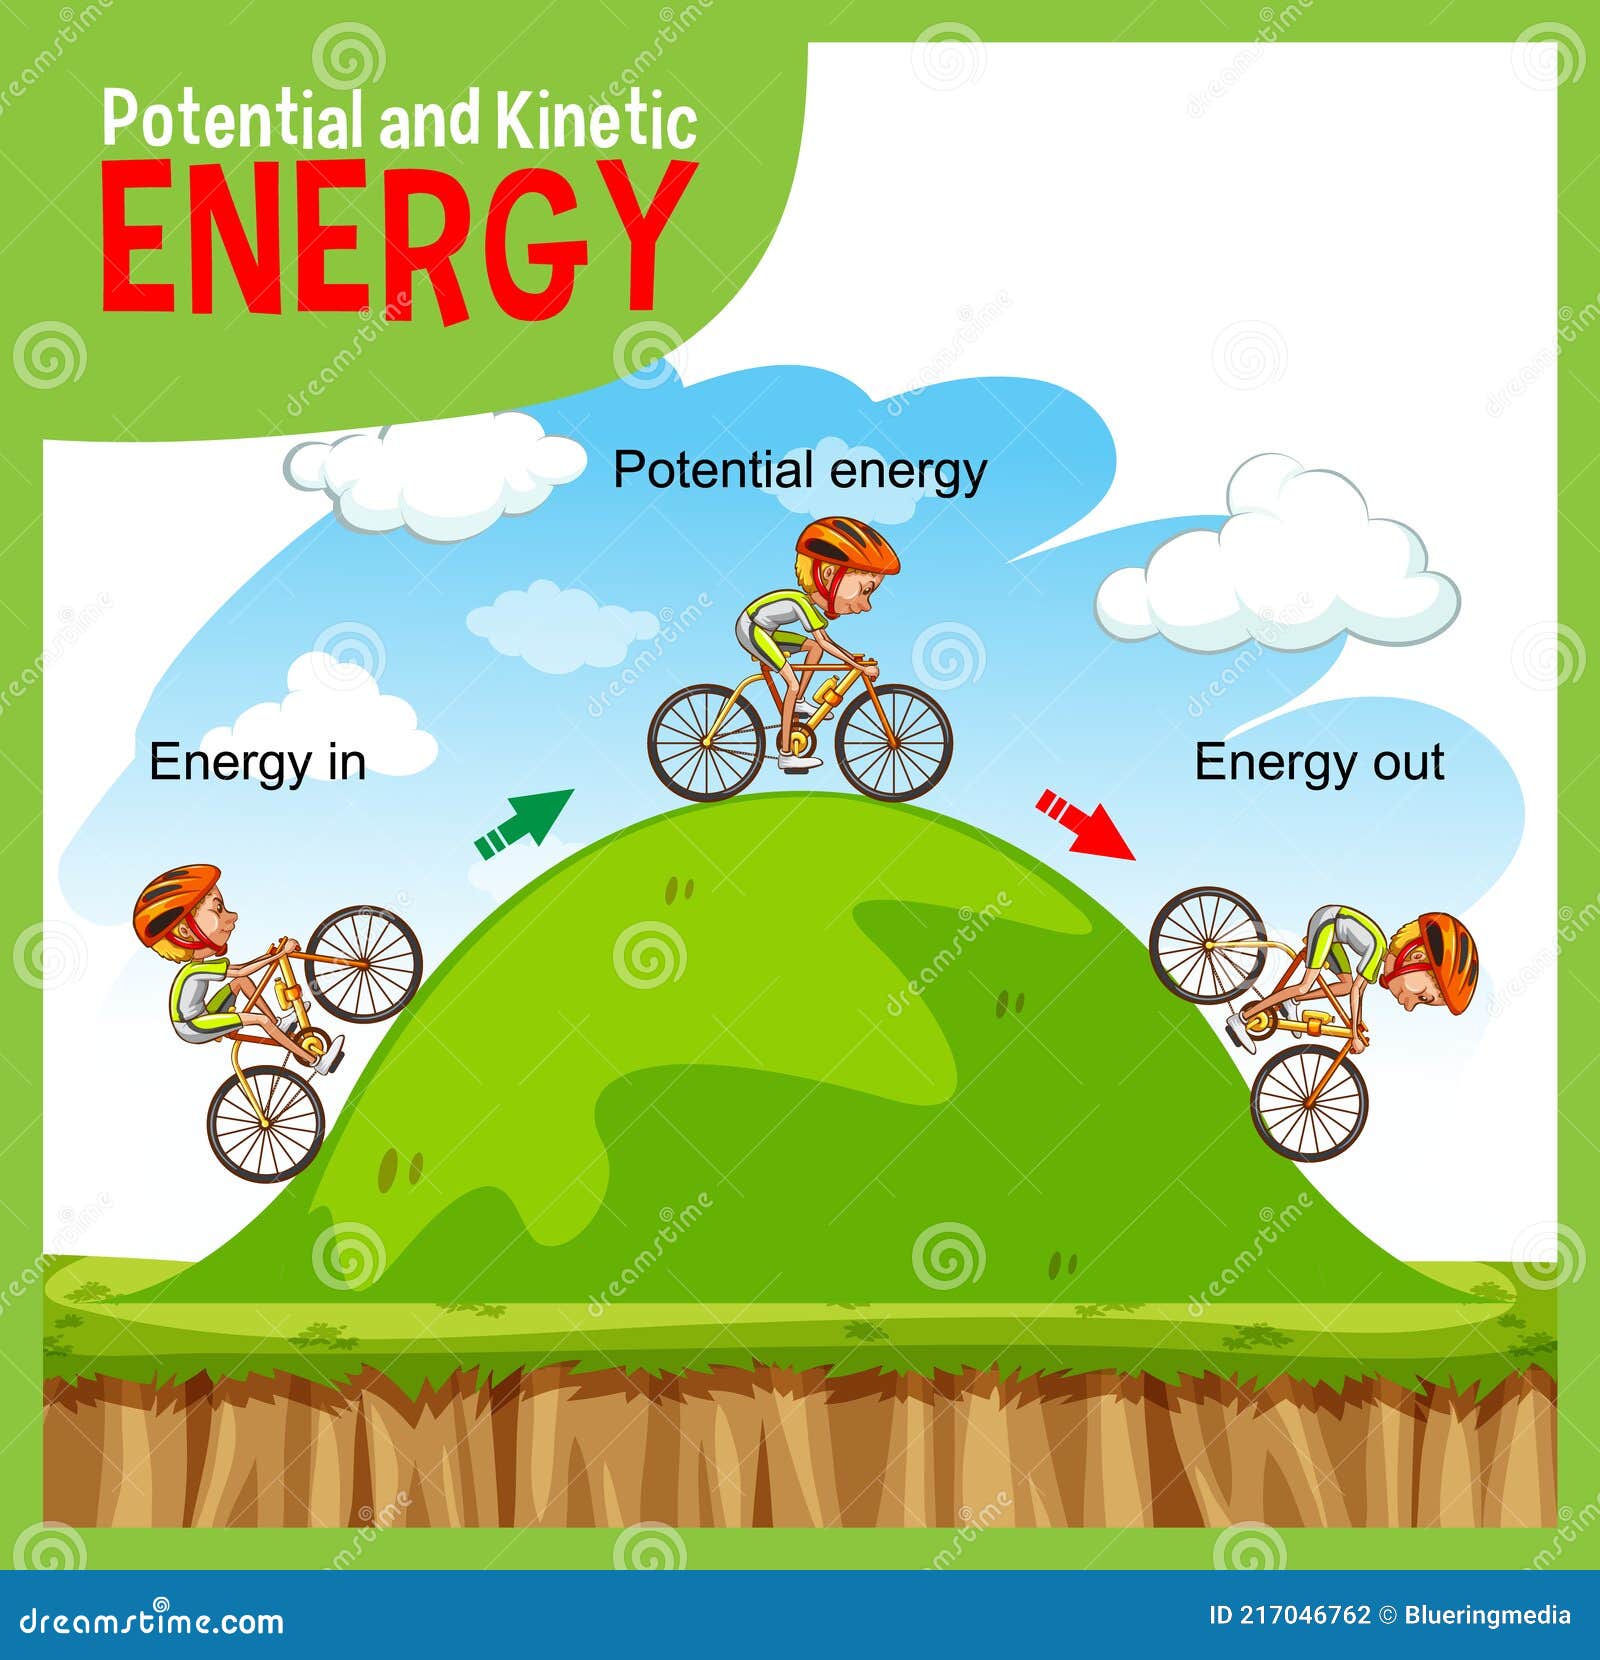 Kinetic energy